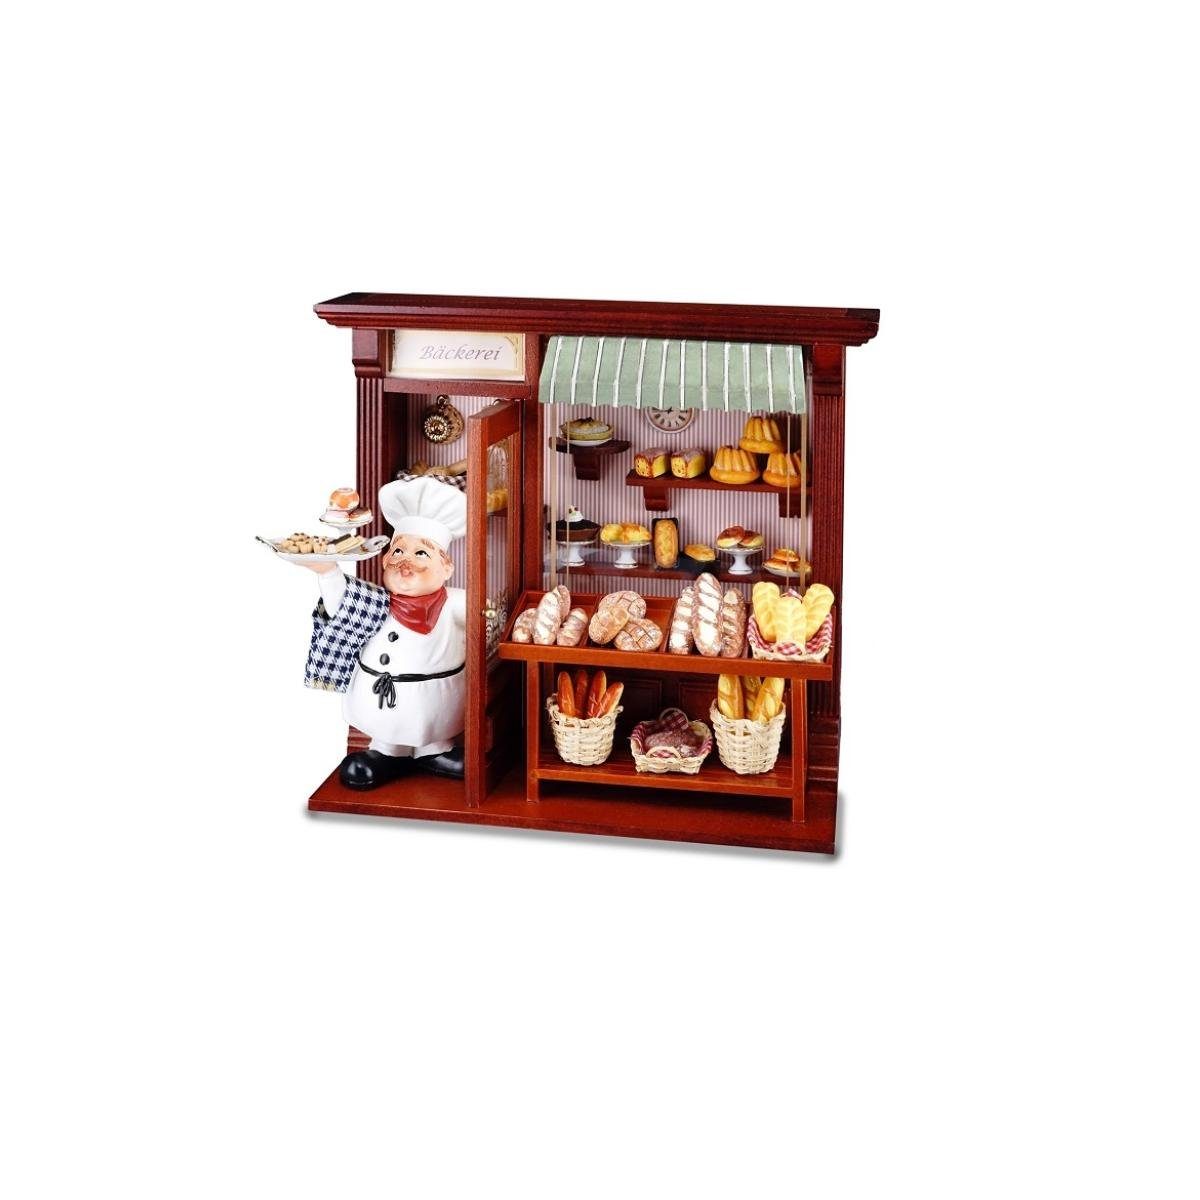 Miniatur Rahmen 001.794/5 Porzellan - Bäckerei, Reutter